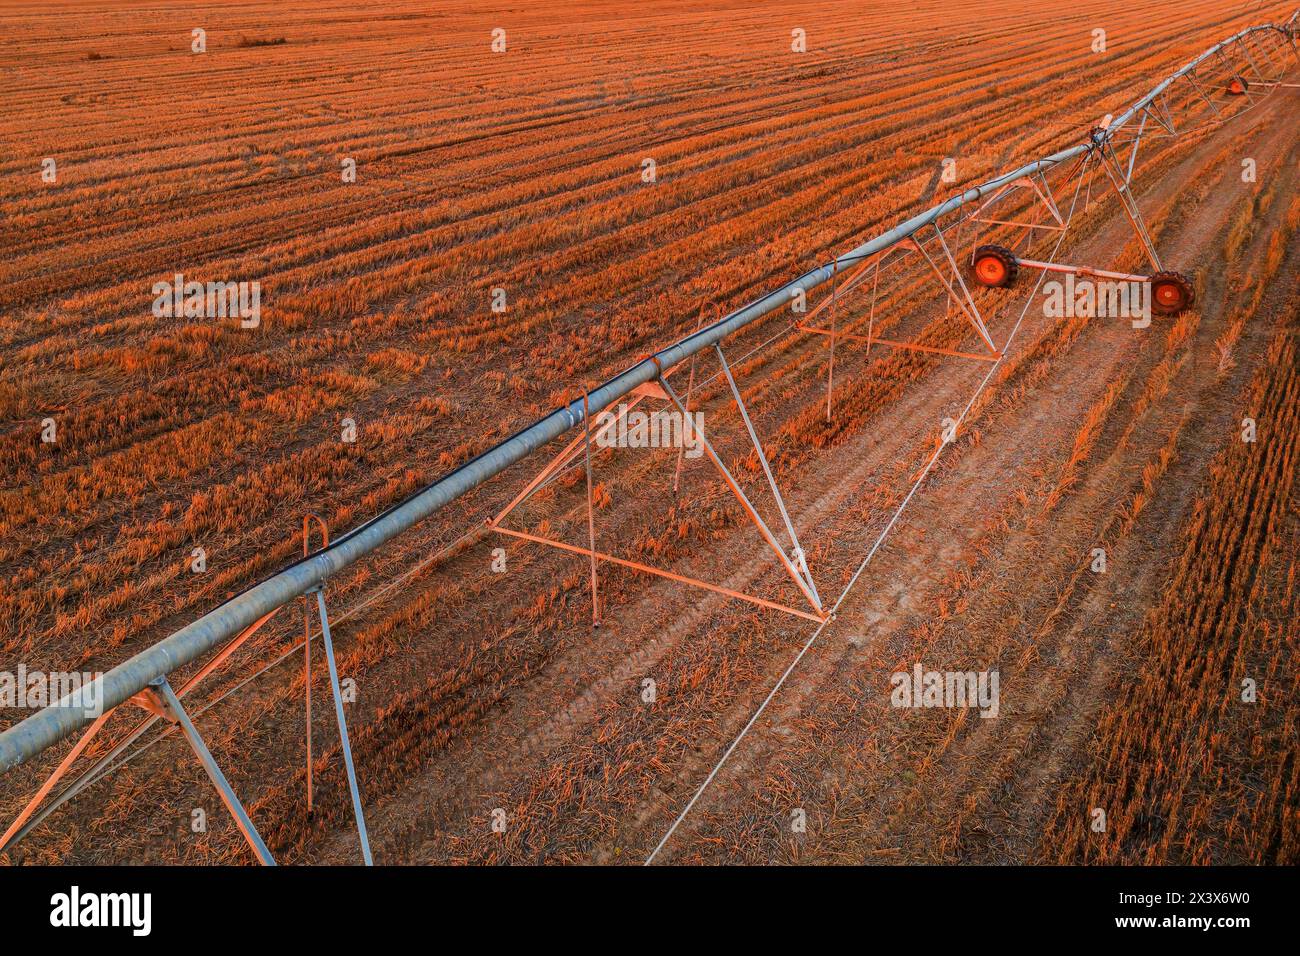 Linea di irrigazione agricola con spostamento laterale nel campo di colza raccolto, colpo aereo dal drone pov, vista ad angolo alto Foto Stock